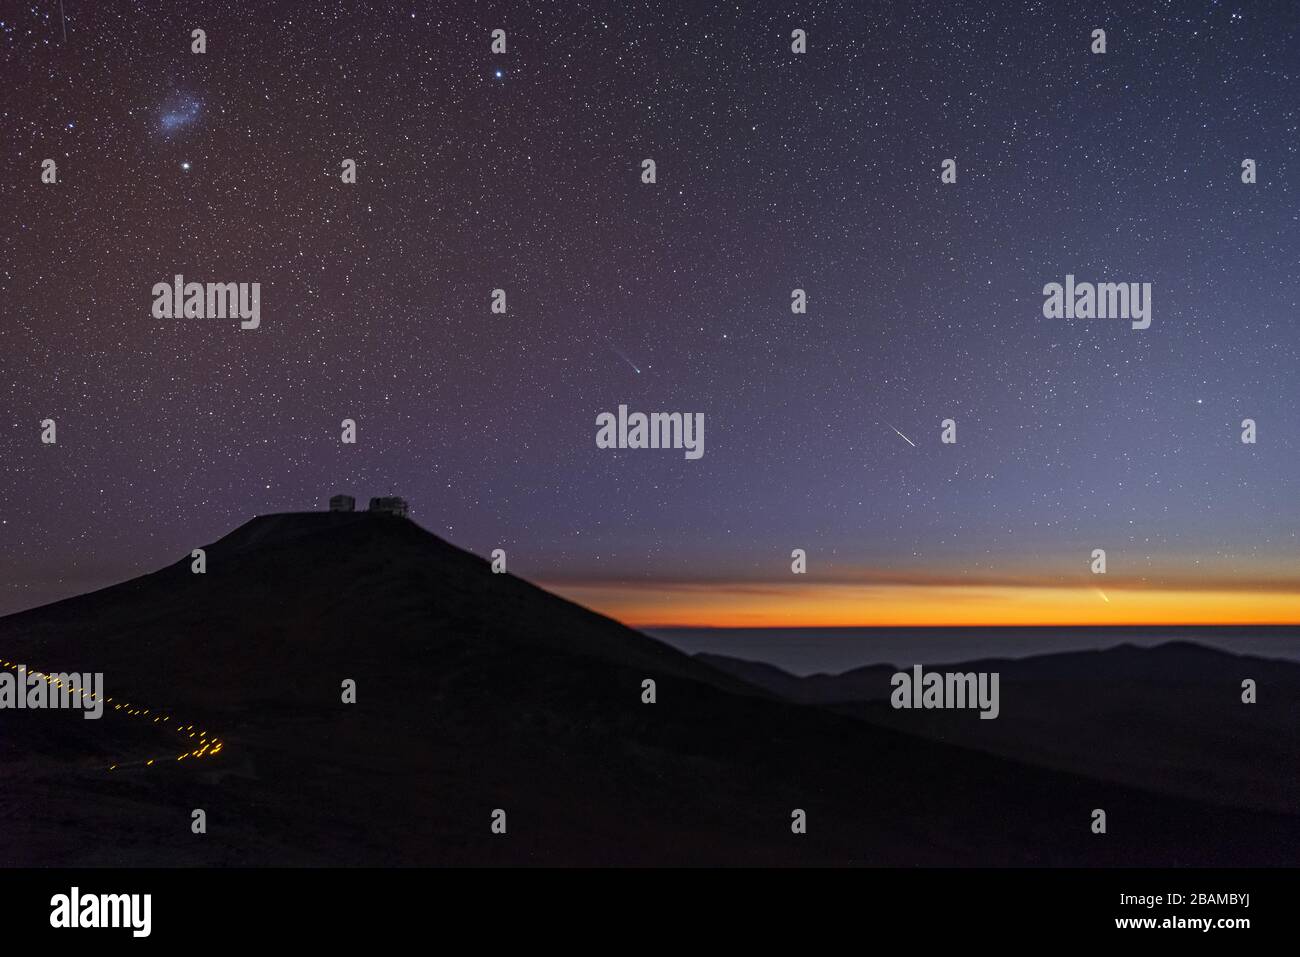 "Englisch: Dieses beeindruckende Bild wurde am 5. März 2013 von Gabriel Brammer, einem der ESO Photo Ambassadors, aufgenommen und zeigt einen Sonnenuntergang über dem Paranal-Observatorium mit zwei Kometen, die sich derzeit über den südlichen Himmel bewegen. In der Nähe des Horizonts, auf der rechten Seite des Bildes, zeigt Comet C/2011 L4 (Pan-STARRS), der hellste der beiden, einen hellen Schwanz, der hauptsächlich durch Staub verursacht wird, der das Sonnenlicht reflektiert. Im Zentrum des Bildes, knapp über den rechten hängen des Cerro Paranal, liegt das grünliche Koma - eine nebulöse Hülle um den Zellkern - von Comet C/2012 F6 (Lemmon) Ca Stockfoto